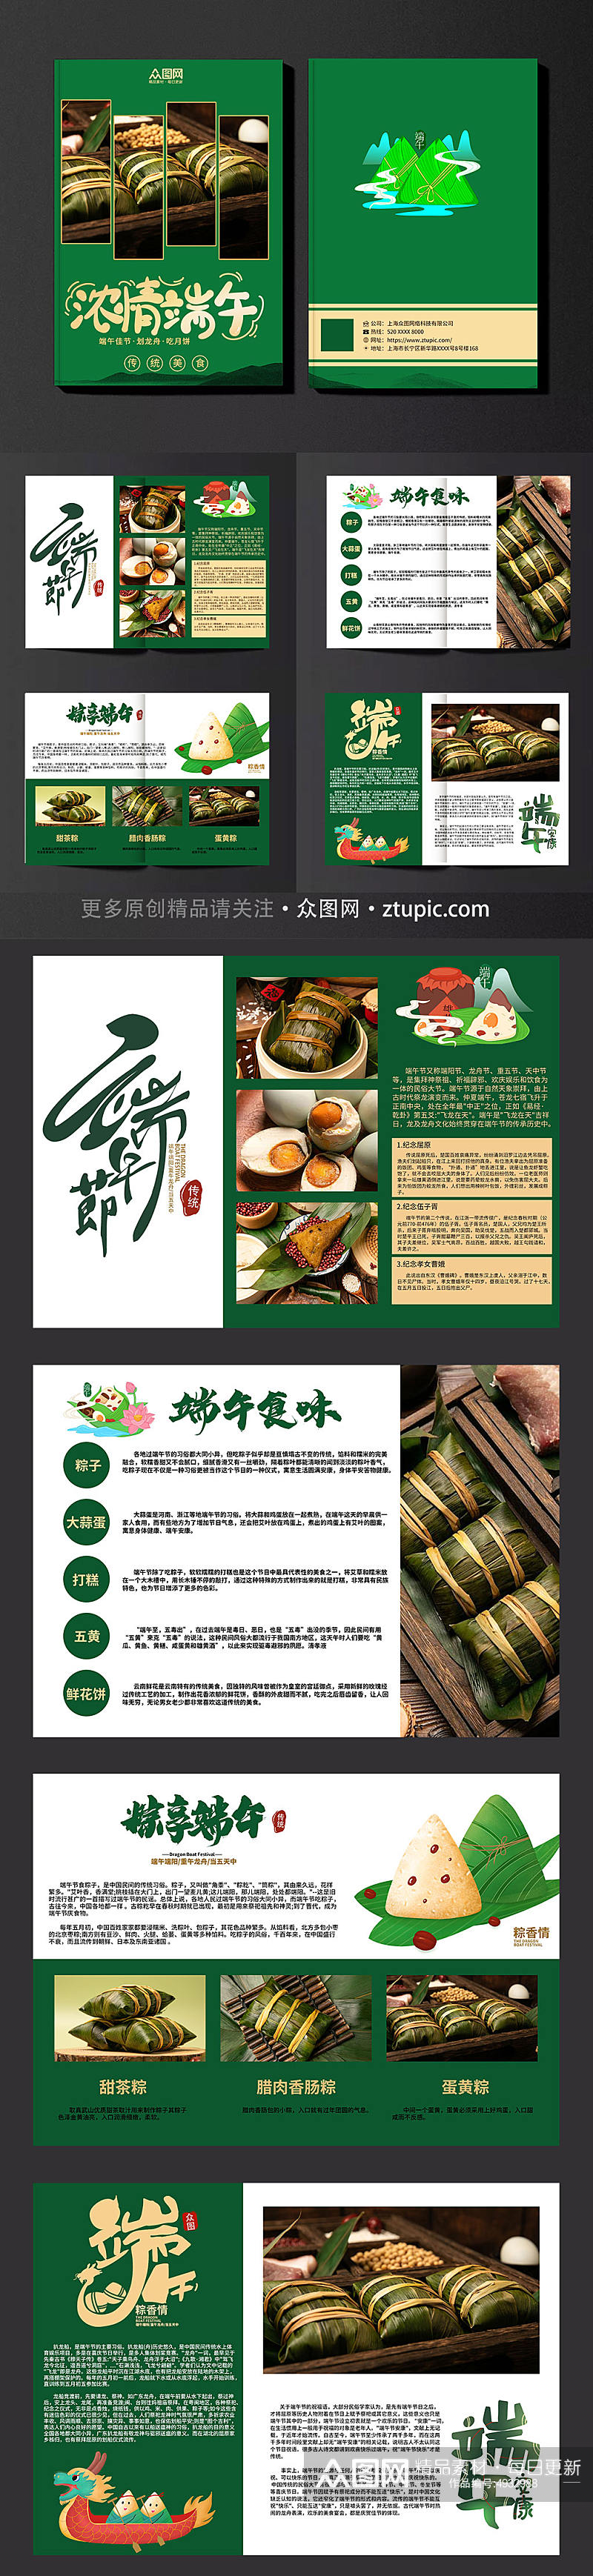 端午节粽子美食产品画册素材